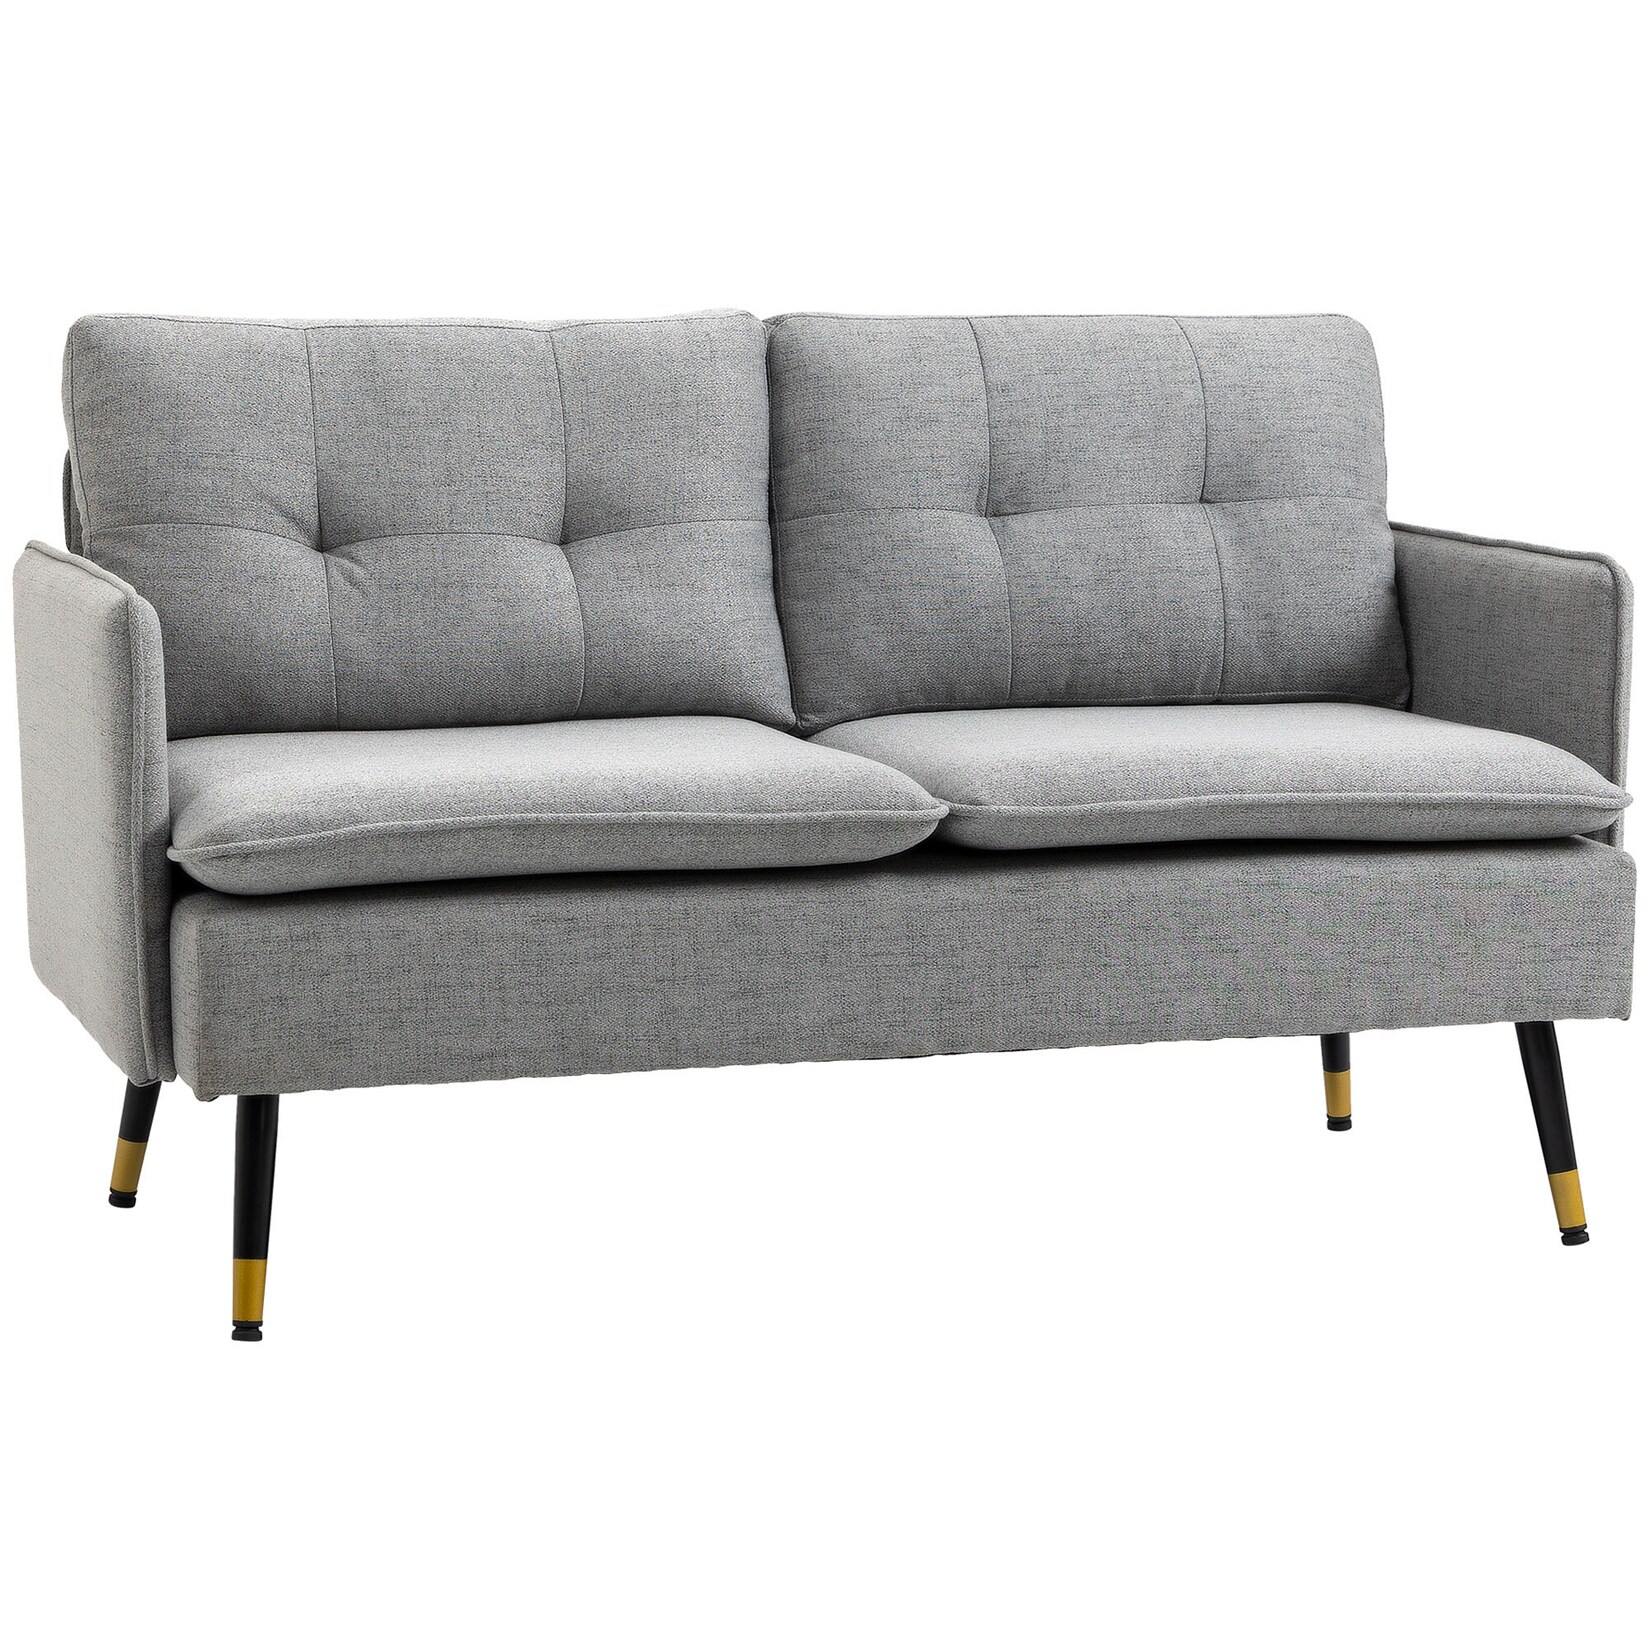 HOMCOM Zweisitzer Sofa mit Rücken- und Sitzkissen grau 139L x 68B x 80H cm